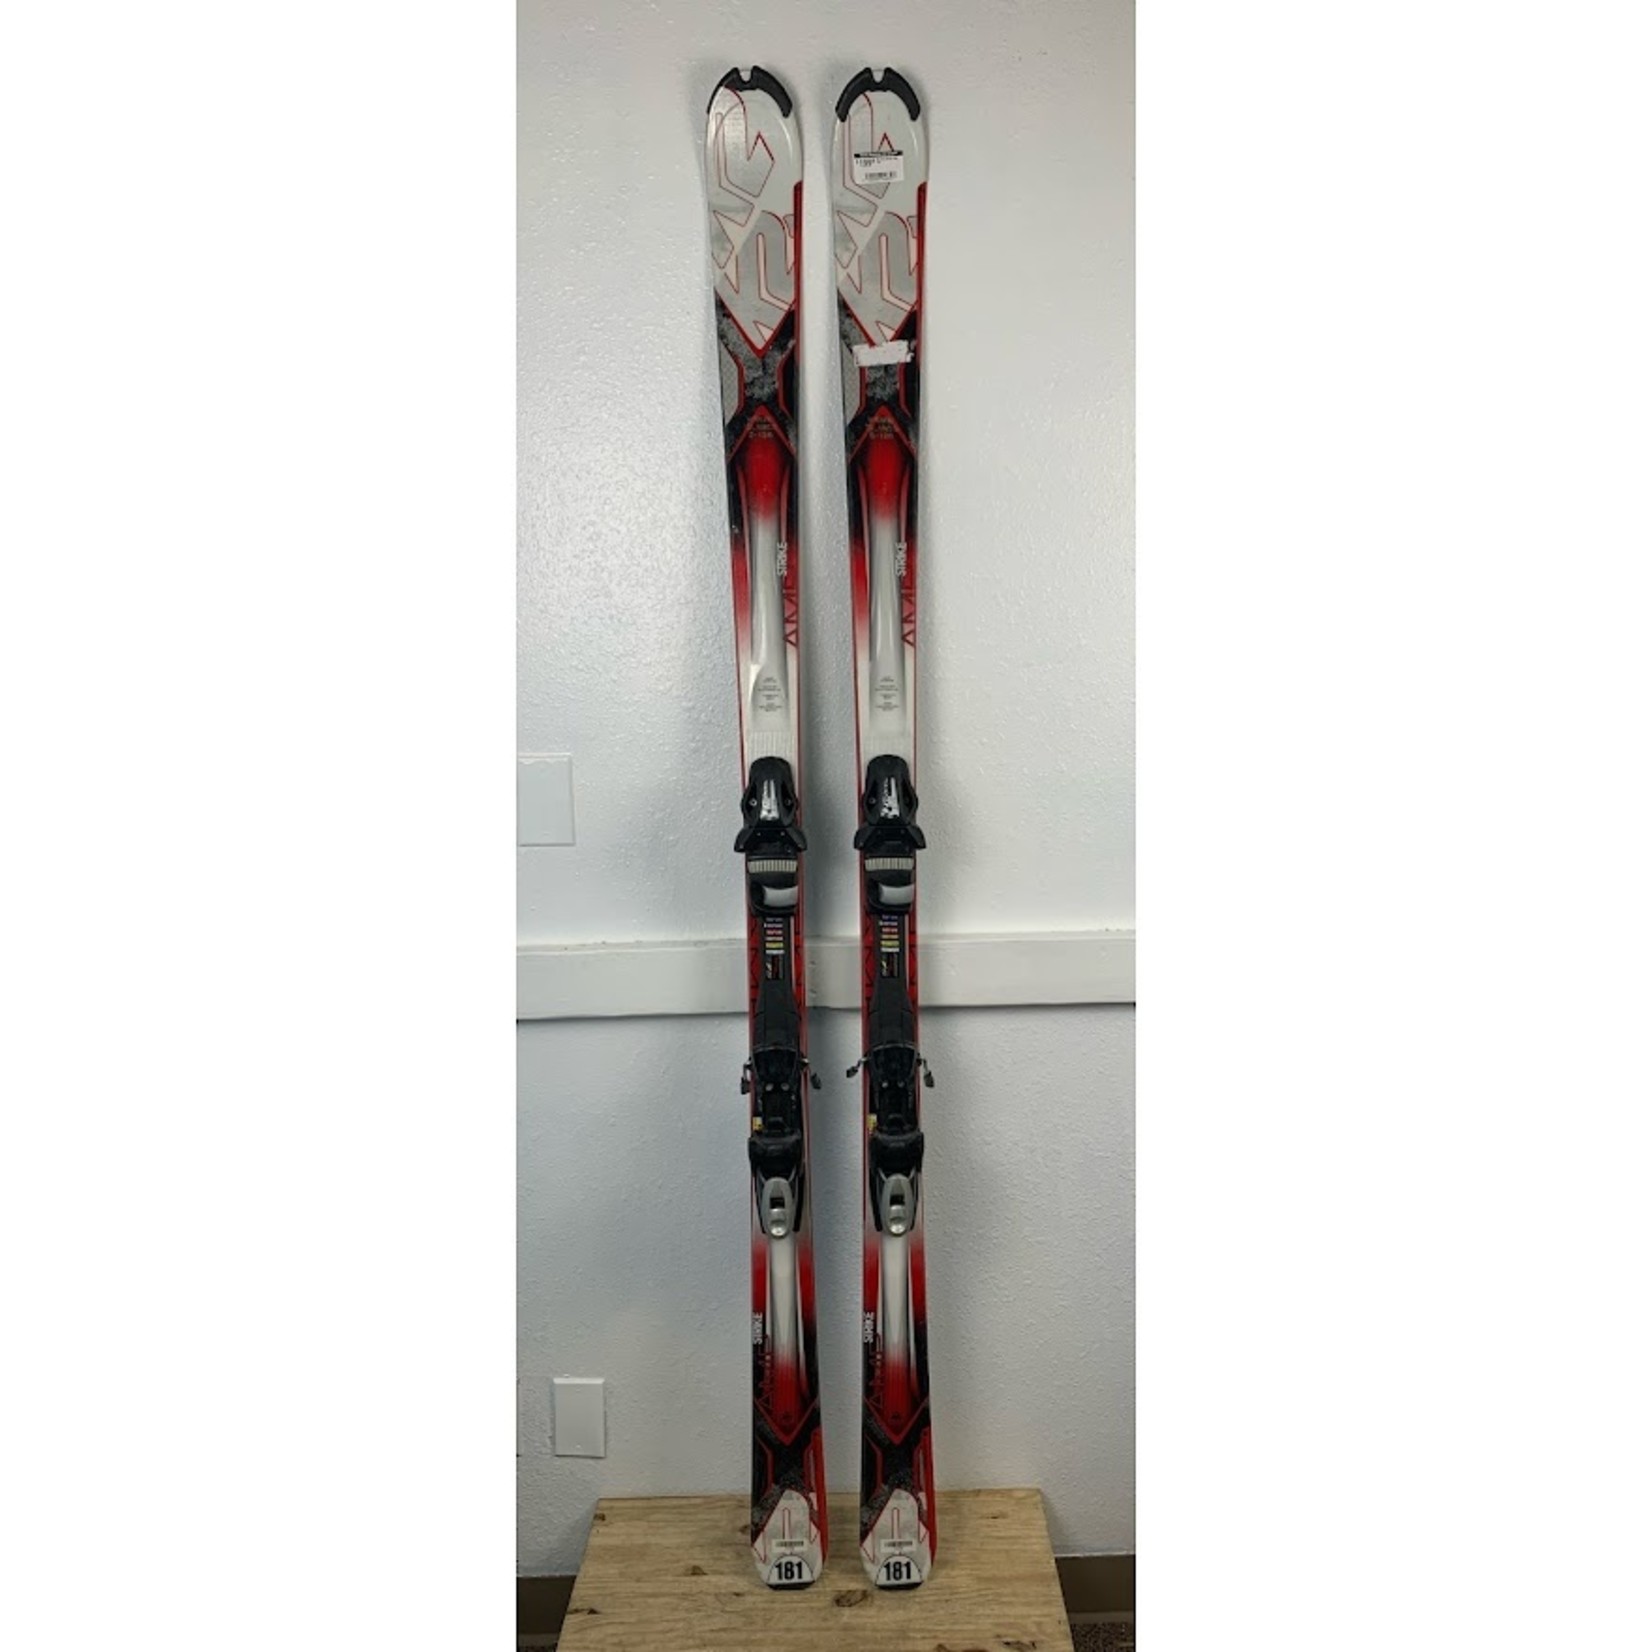 K2 Amp Strike Skis, 181 cm